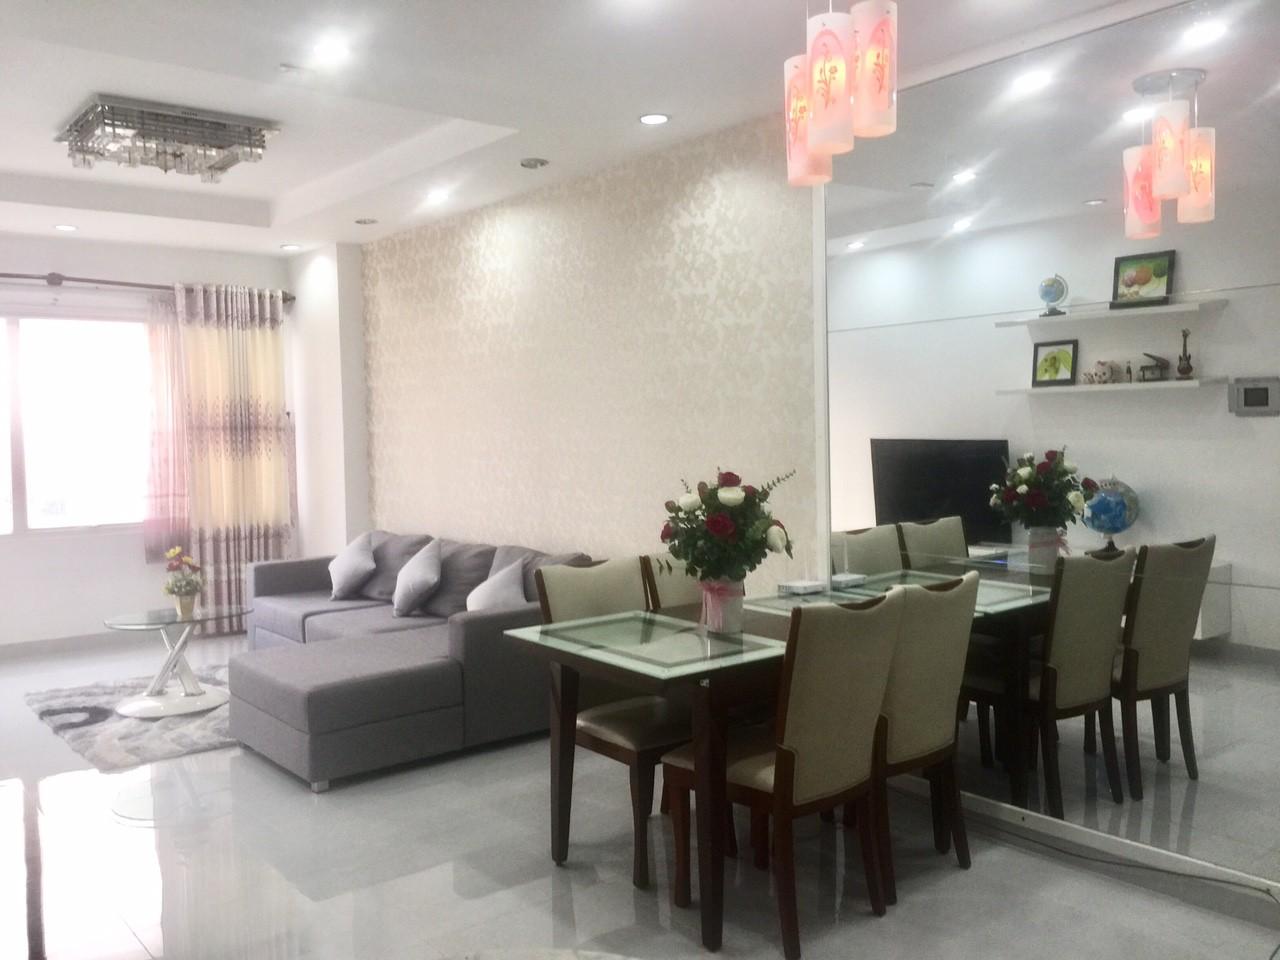 Cho thuê căn hộ The Morning Star, quận Bình Thạnh, DT: 112m2, 3 phòng ngủ, Ms Như: 0936240549